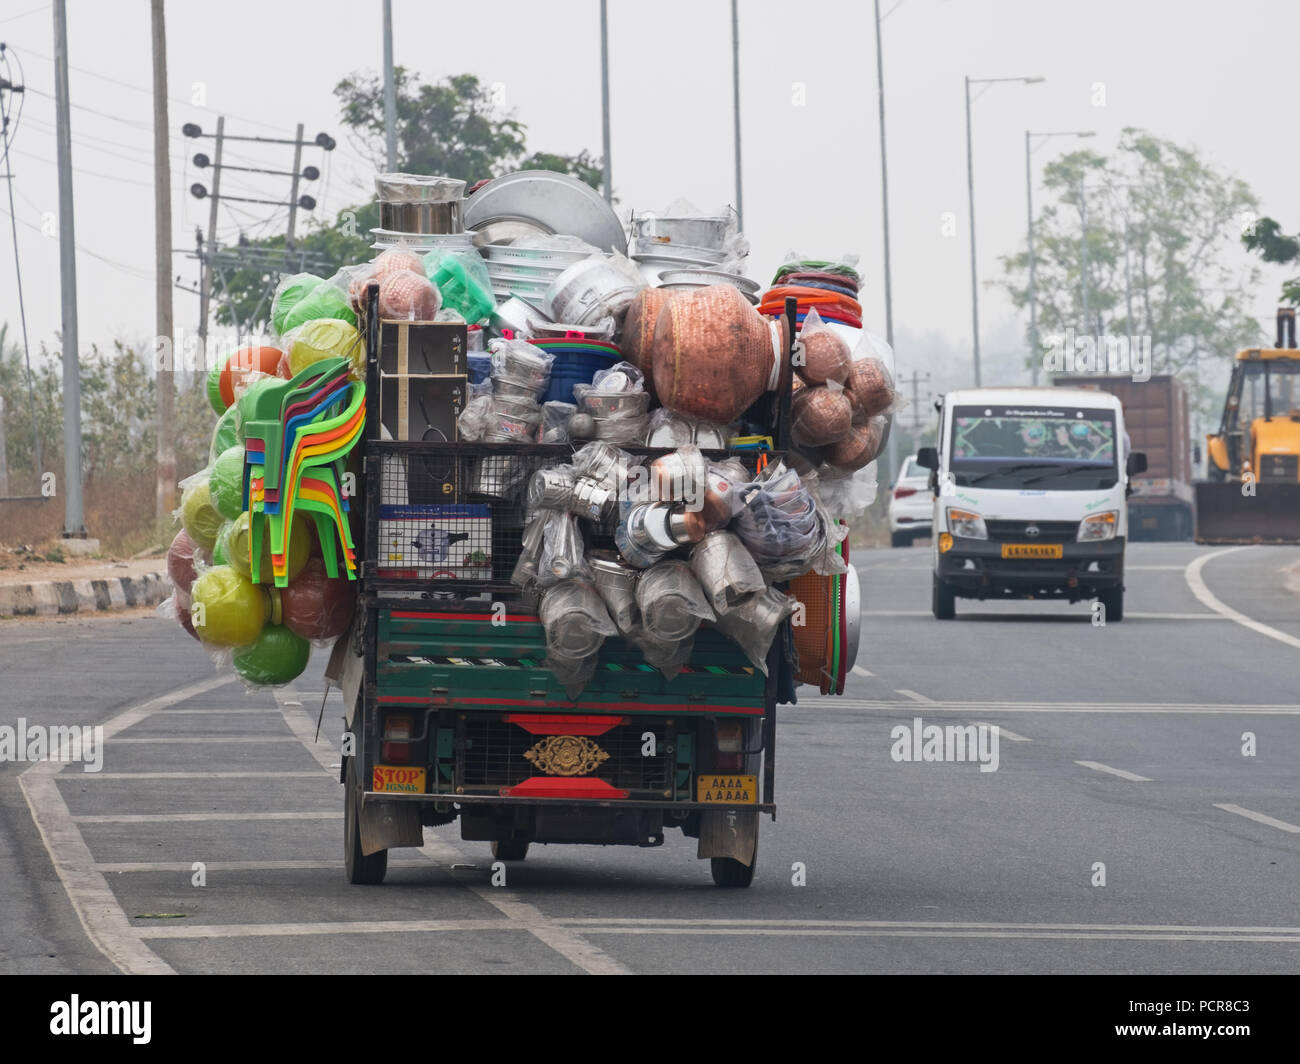 Sobrecargar el vehículo comercial llevando enseres en una carretera principal al sur de Mysore, India. Cargas excesivas son habituales en las carreteras indias Foto de stock